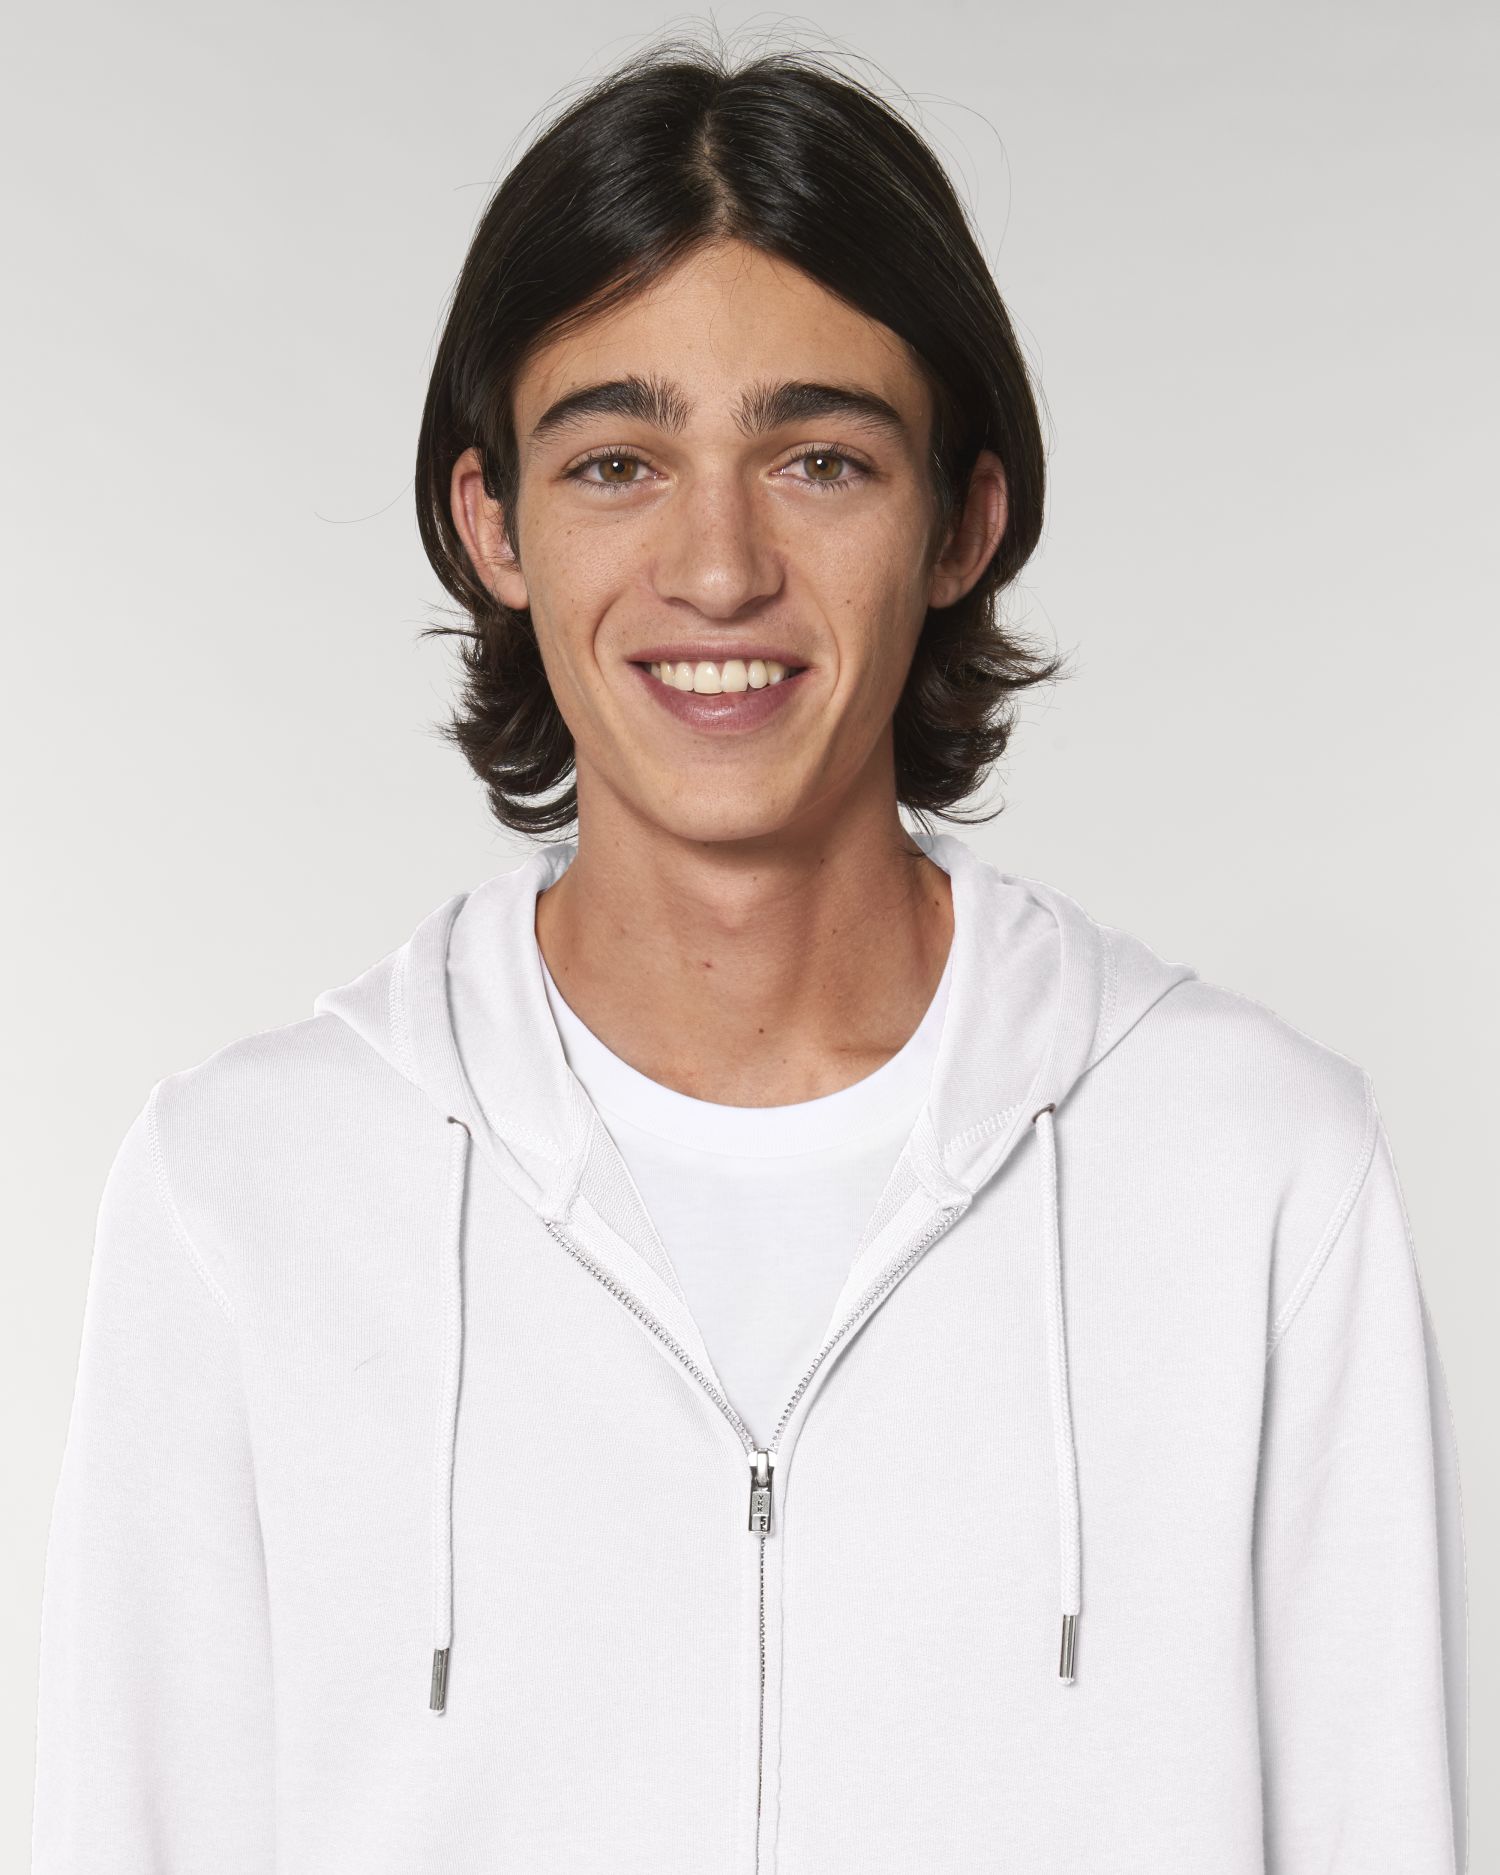 Zip-thru sweatshirts Connector in Farbe White